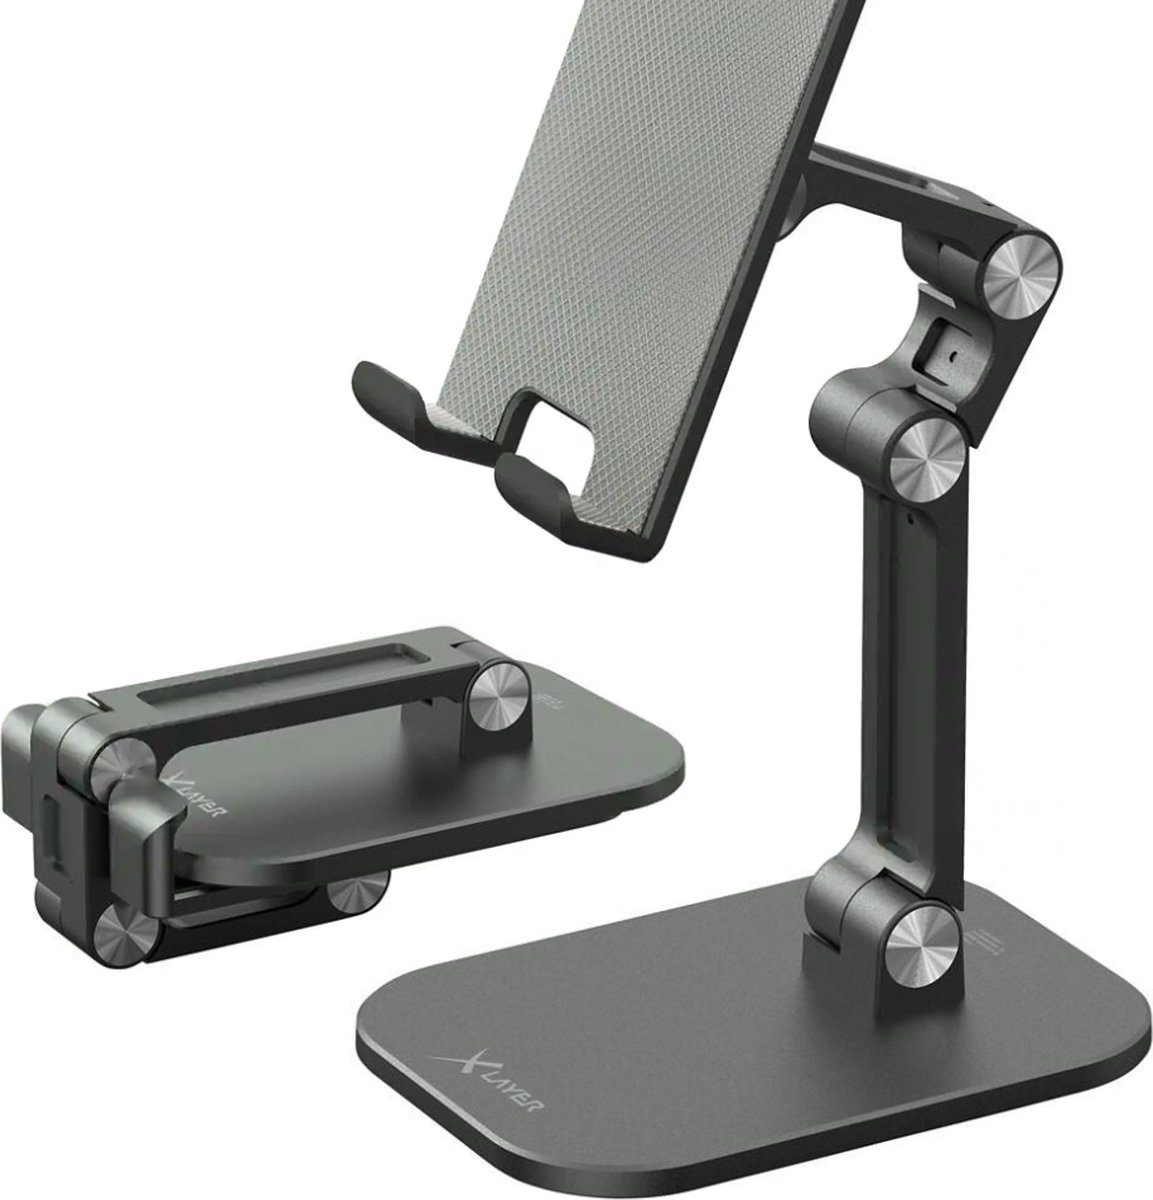 XLayer opvouwbare smartphone standaard - Lichtgewicht aluminium - Standaard voor smartphone, tablet of eReader - Spacegrijs